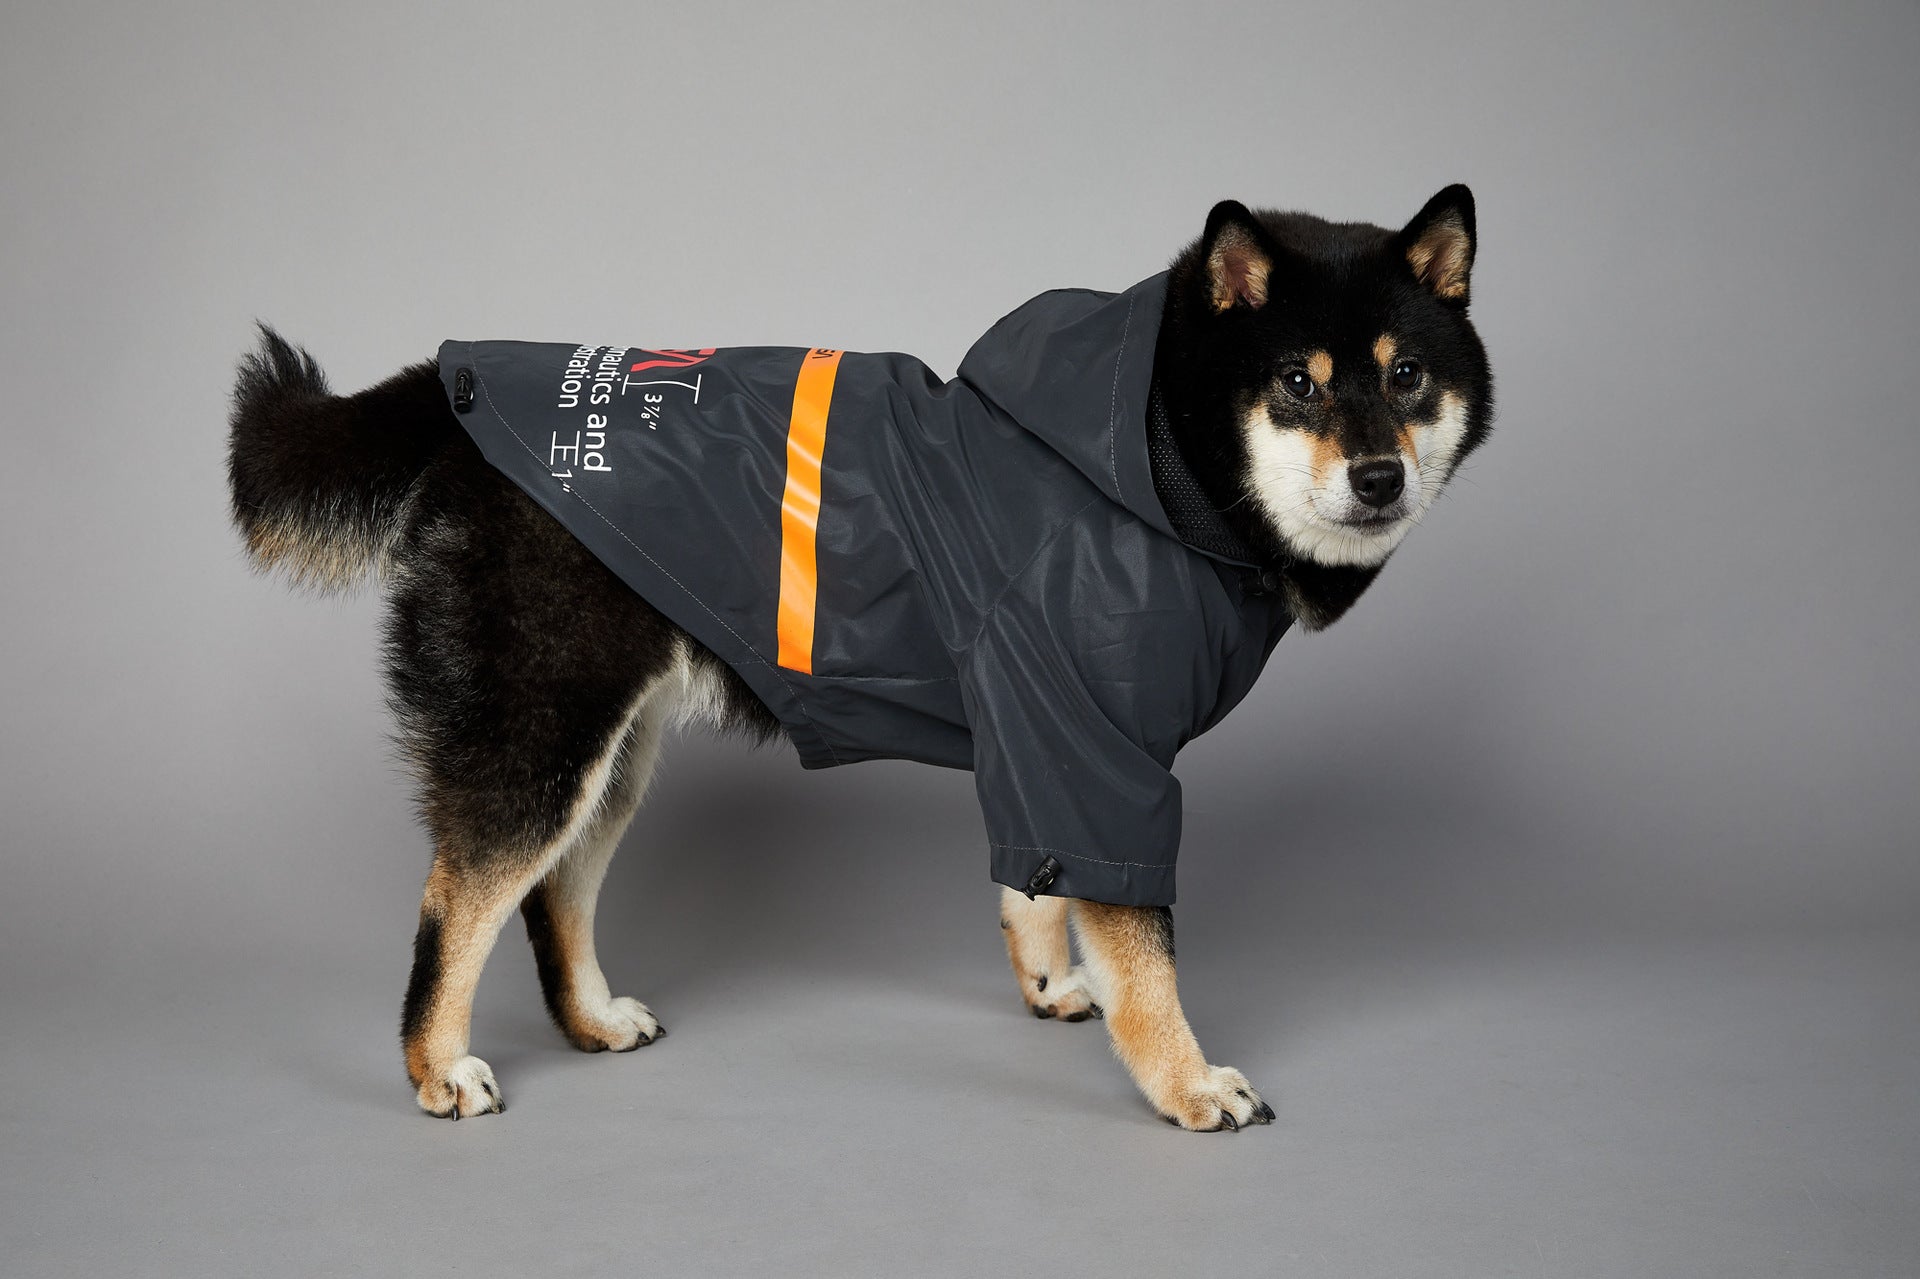 In unserem luxuriösen Regenmantel sieht Ihr Hund aus wie ein echter Astronaut - bereit für Weltraumspaziergänge und Spaziergänge im Regen! 🌧️🐾 #LuxusHundekleidung #Hundebekleidung #SpaceSuit #HundeKostüm